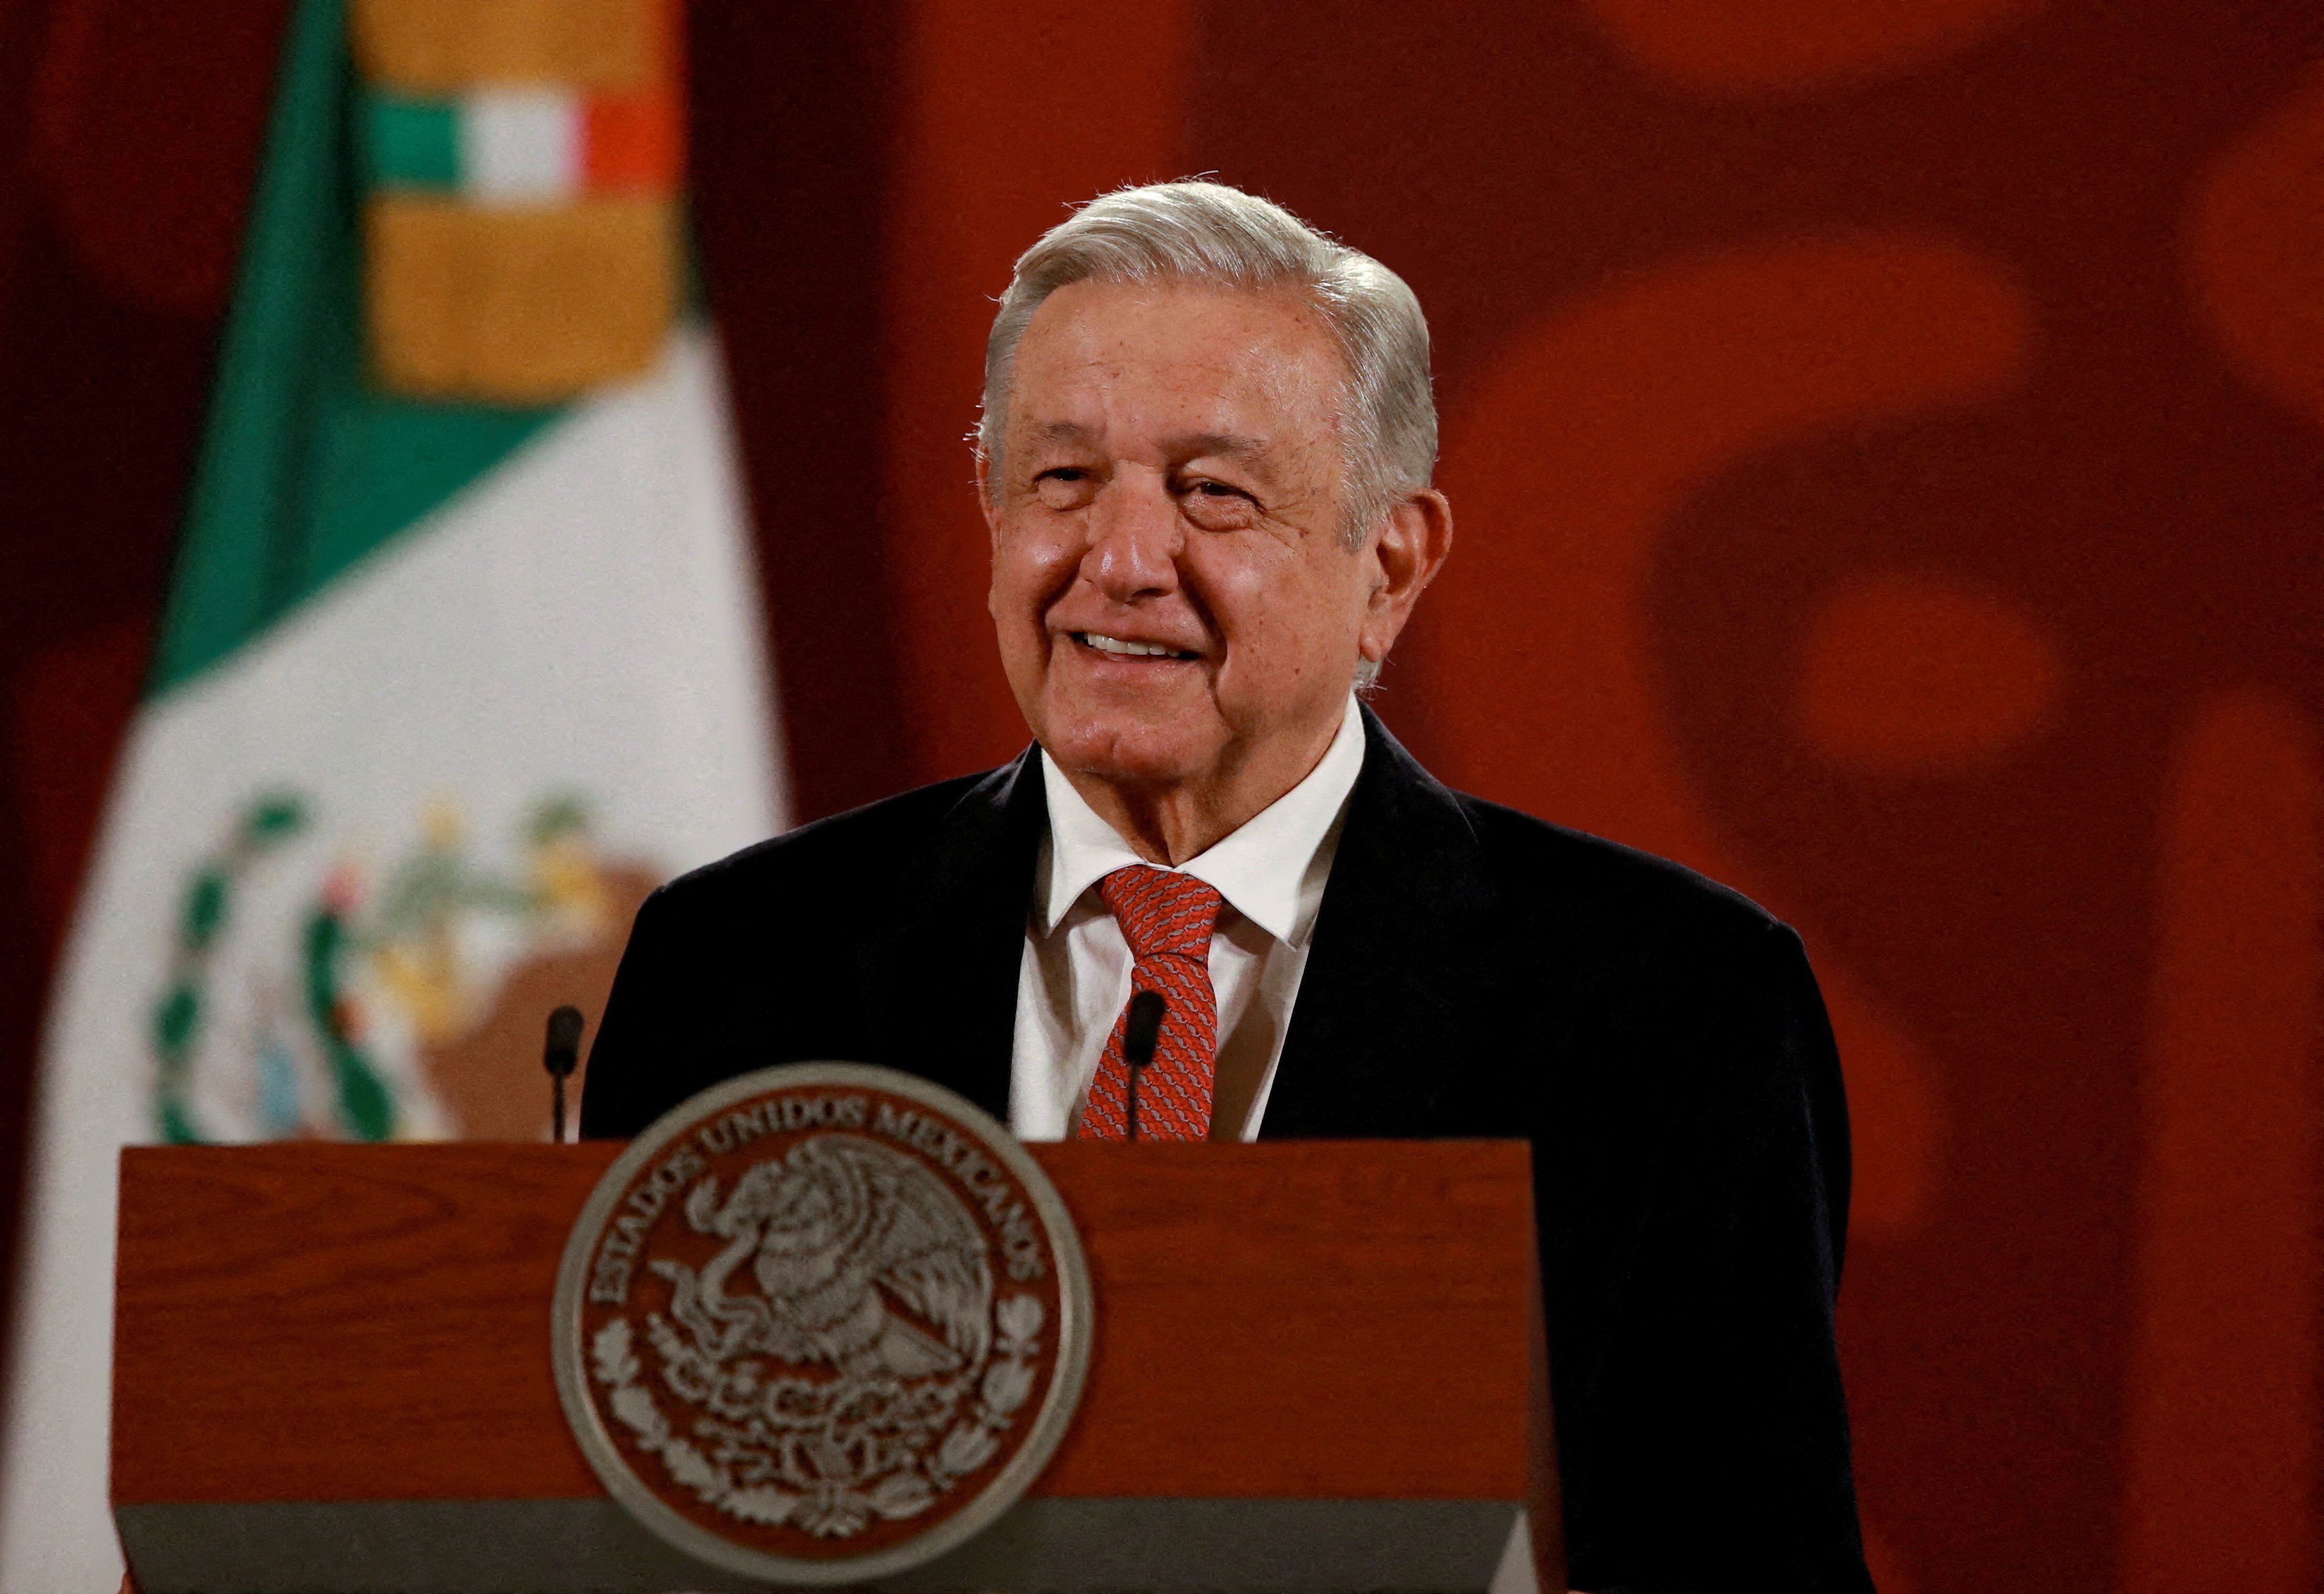 López Obrador convocó a marchar junto a él en celebración de sus cuatro años de gobierno (REUTERS/Henry Romero)